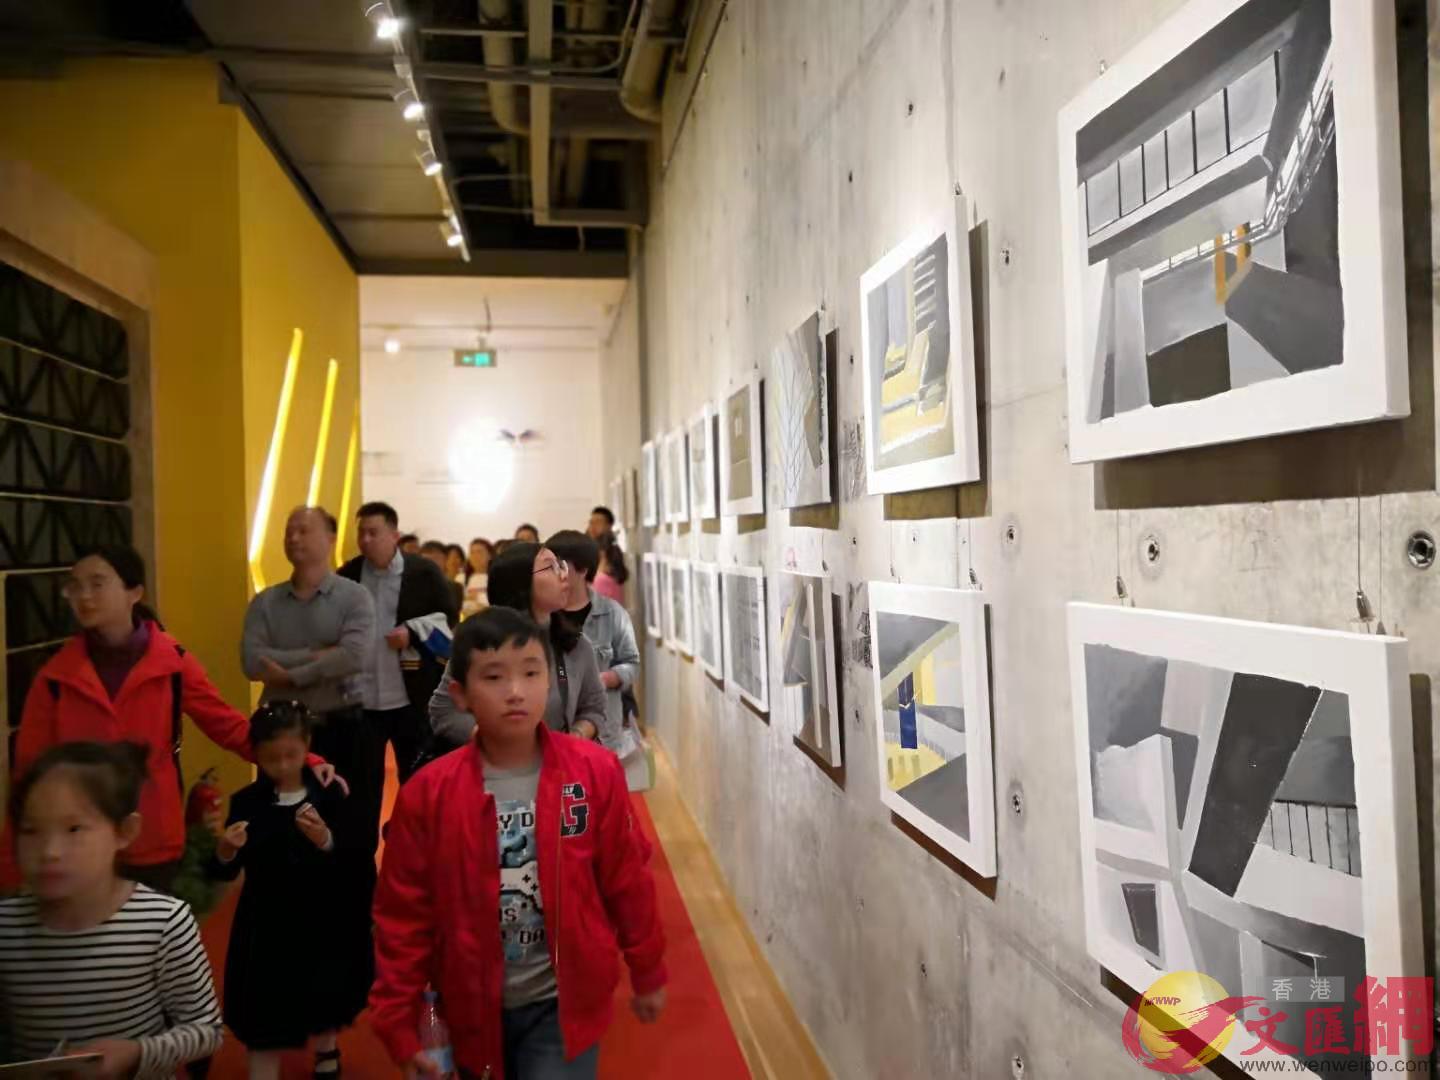 展覽的作品都是來自小燕巢的學生A作品類型包括 電影動畫A多媒體藝術等多元化內容小燕巢]記者 熊君慧 攝^